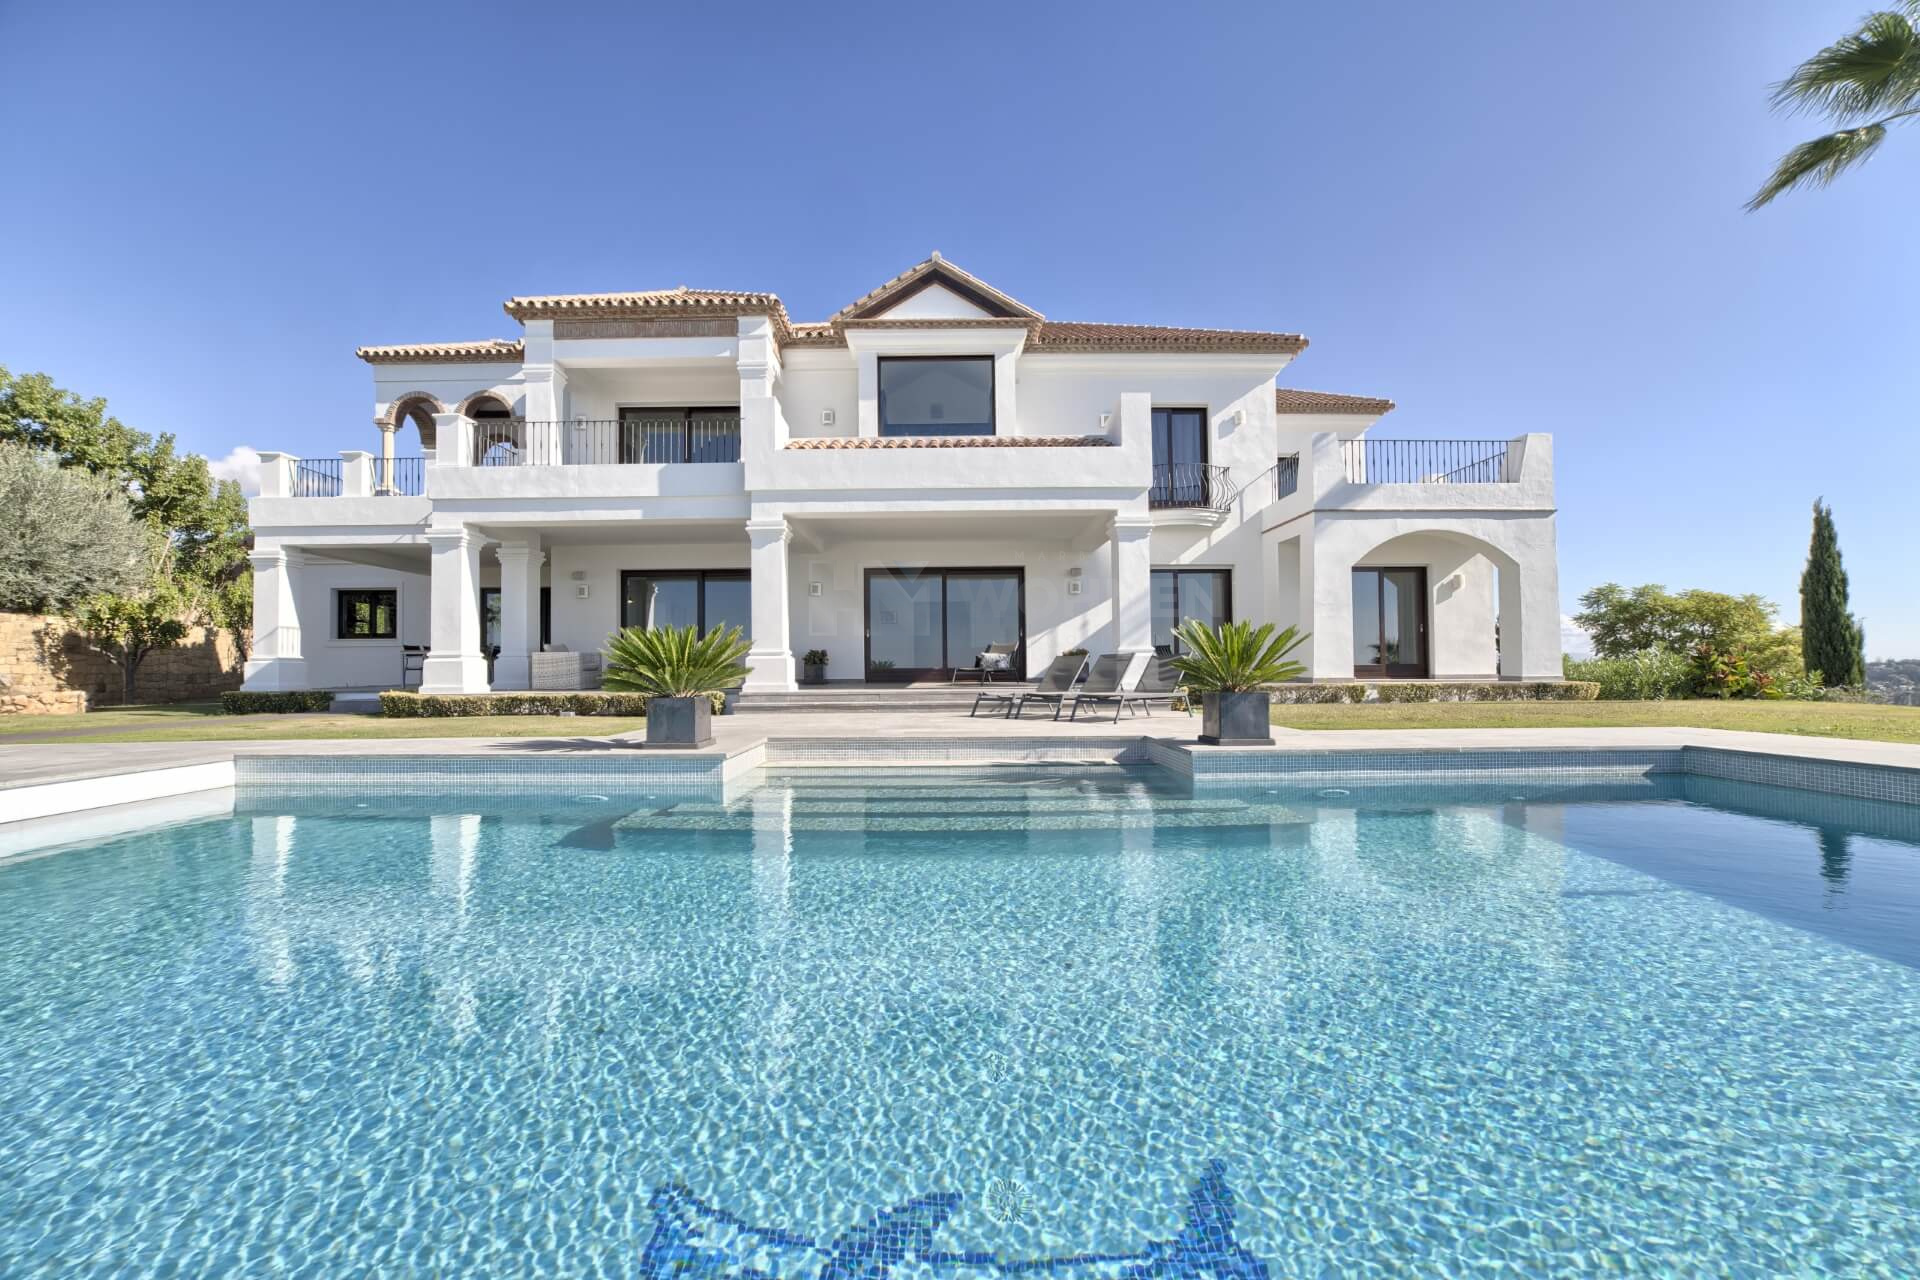 Villa de primera calidad construida con los más altos estándares en Los Flamingos Golf Resort